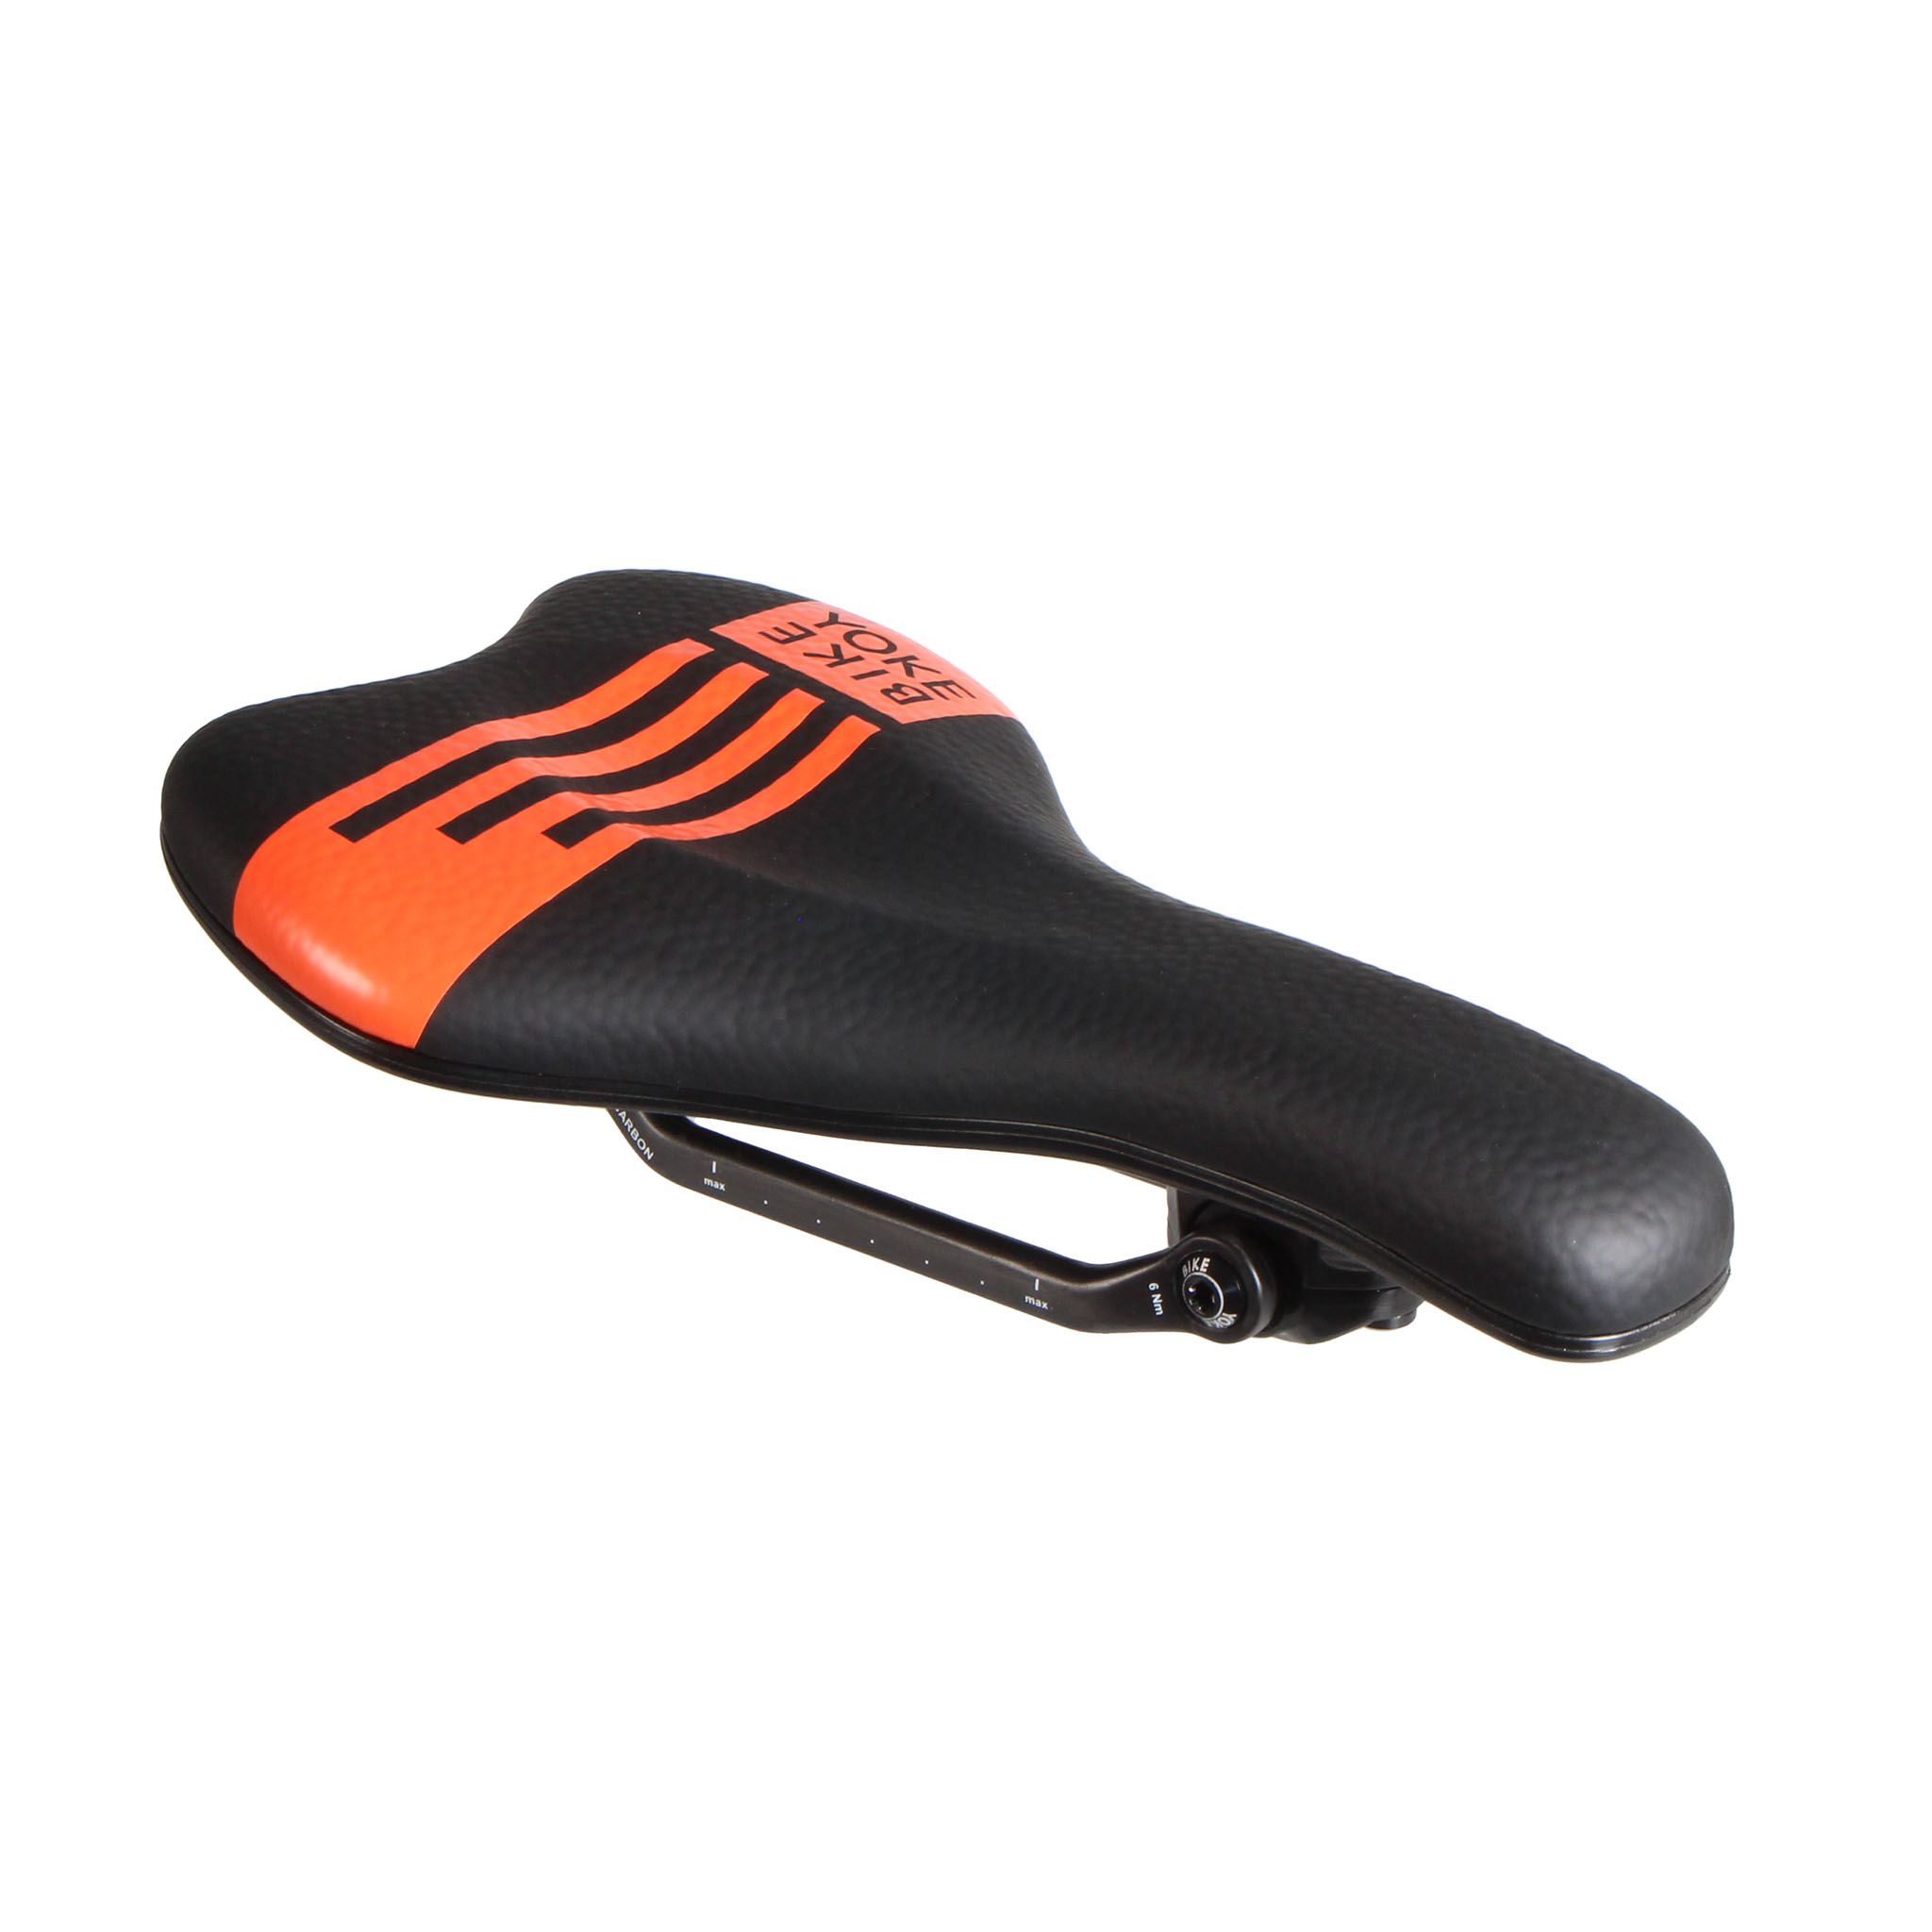 Bike Yoke Sagma Carbon Saddle, 142 - Black/Orange